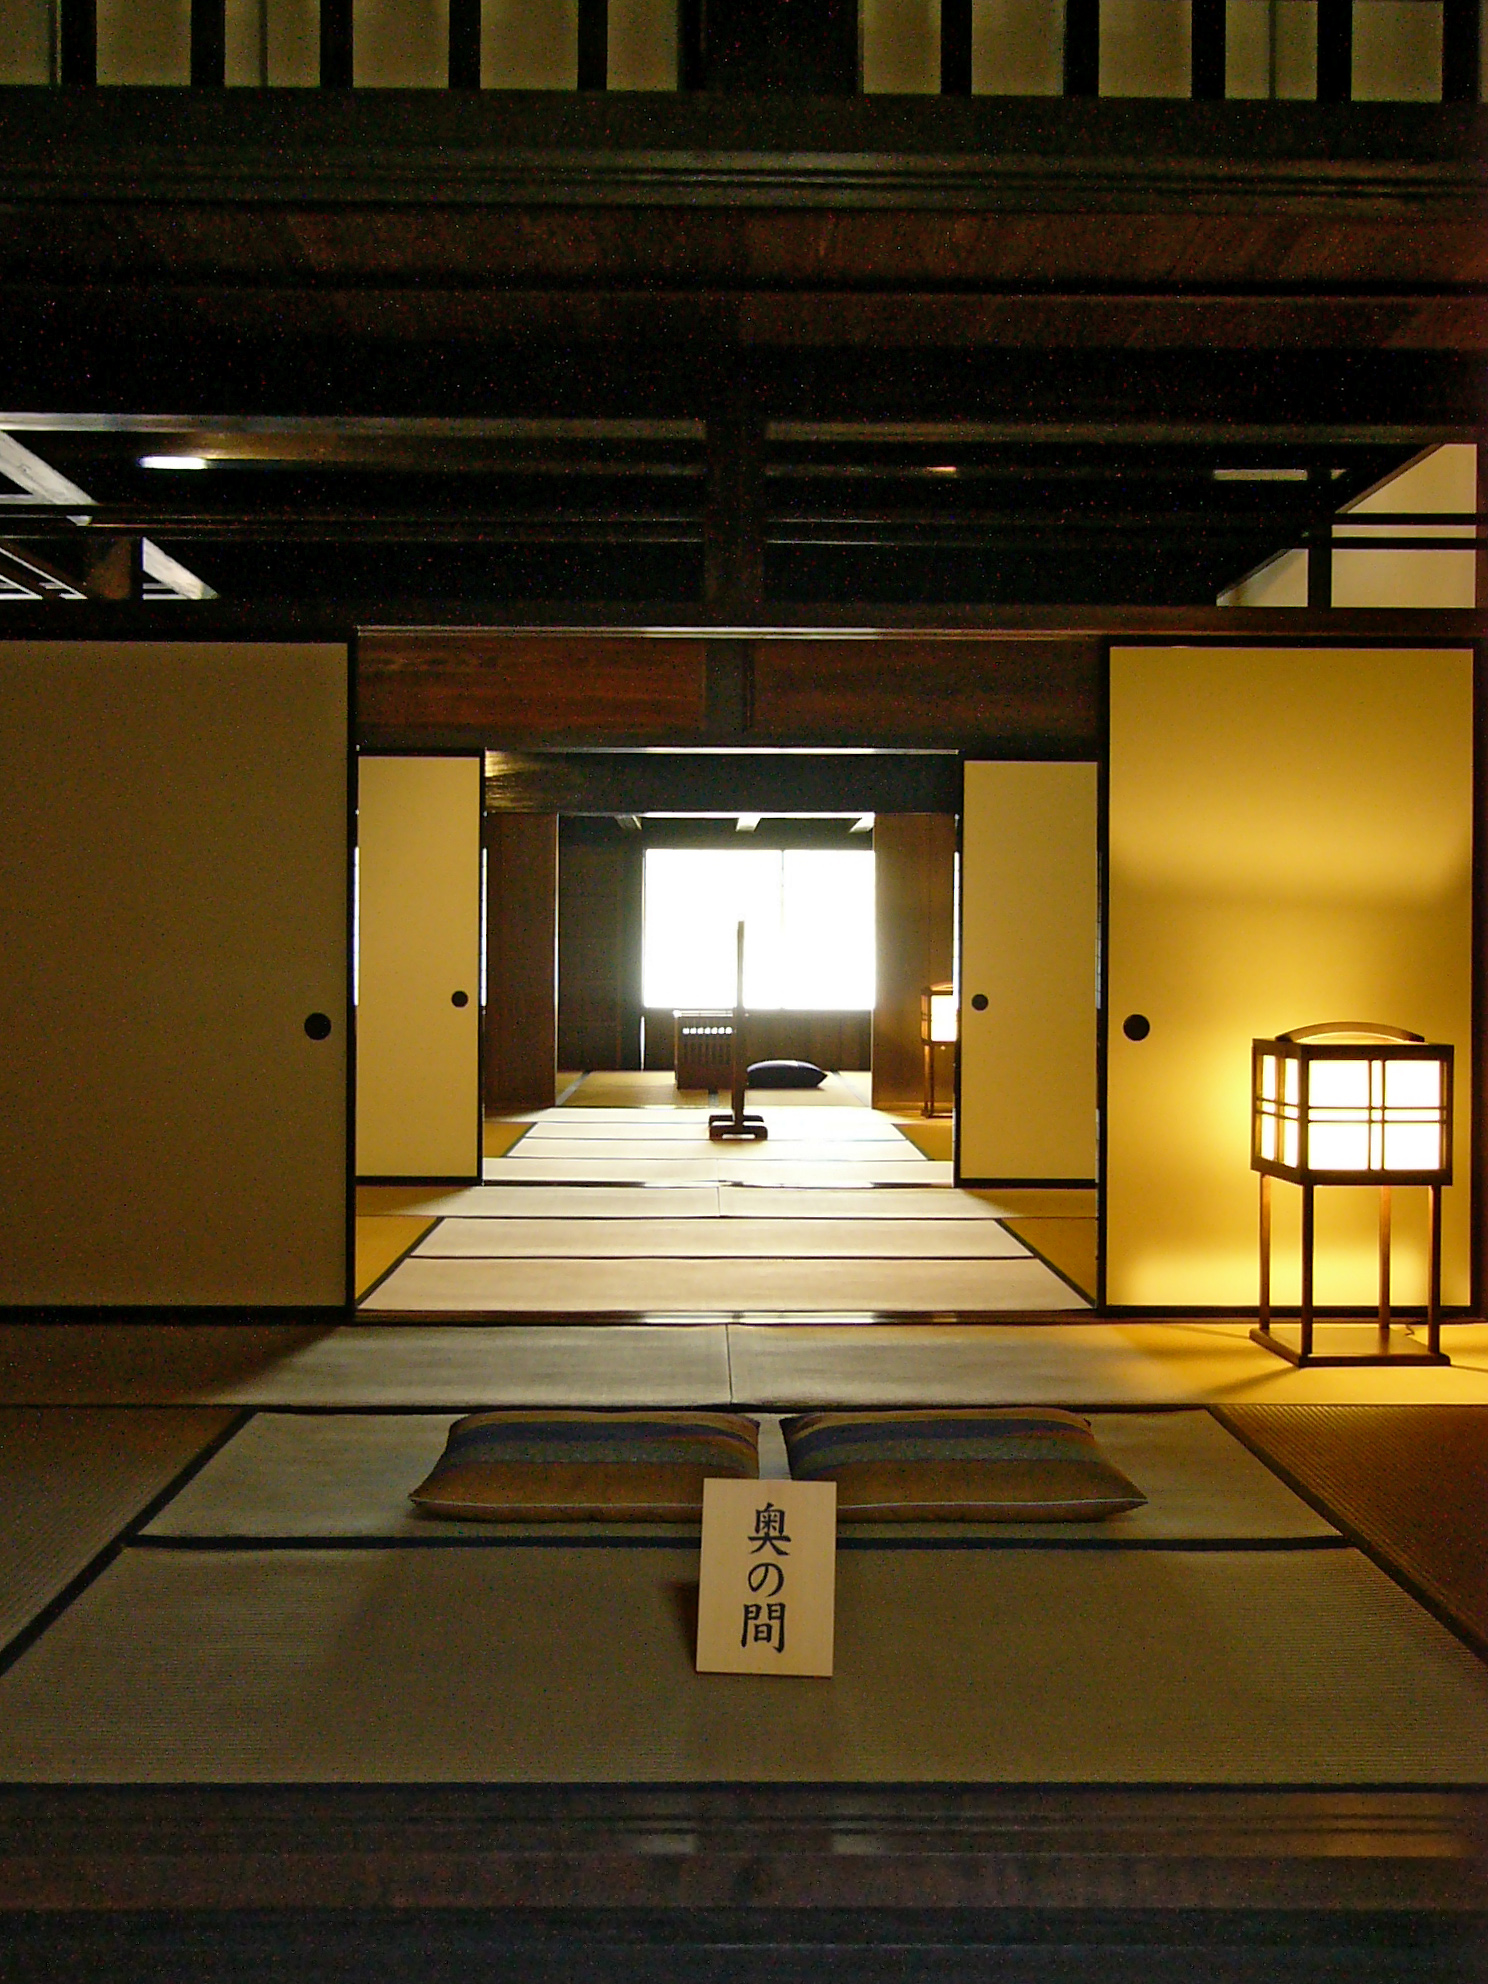 Fusuma - đặc trưng kiến trúc nhà ở Nhật Bản truyền thống